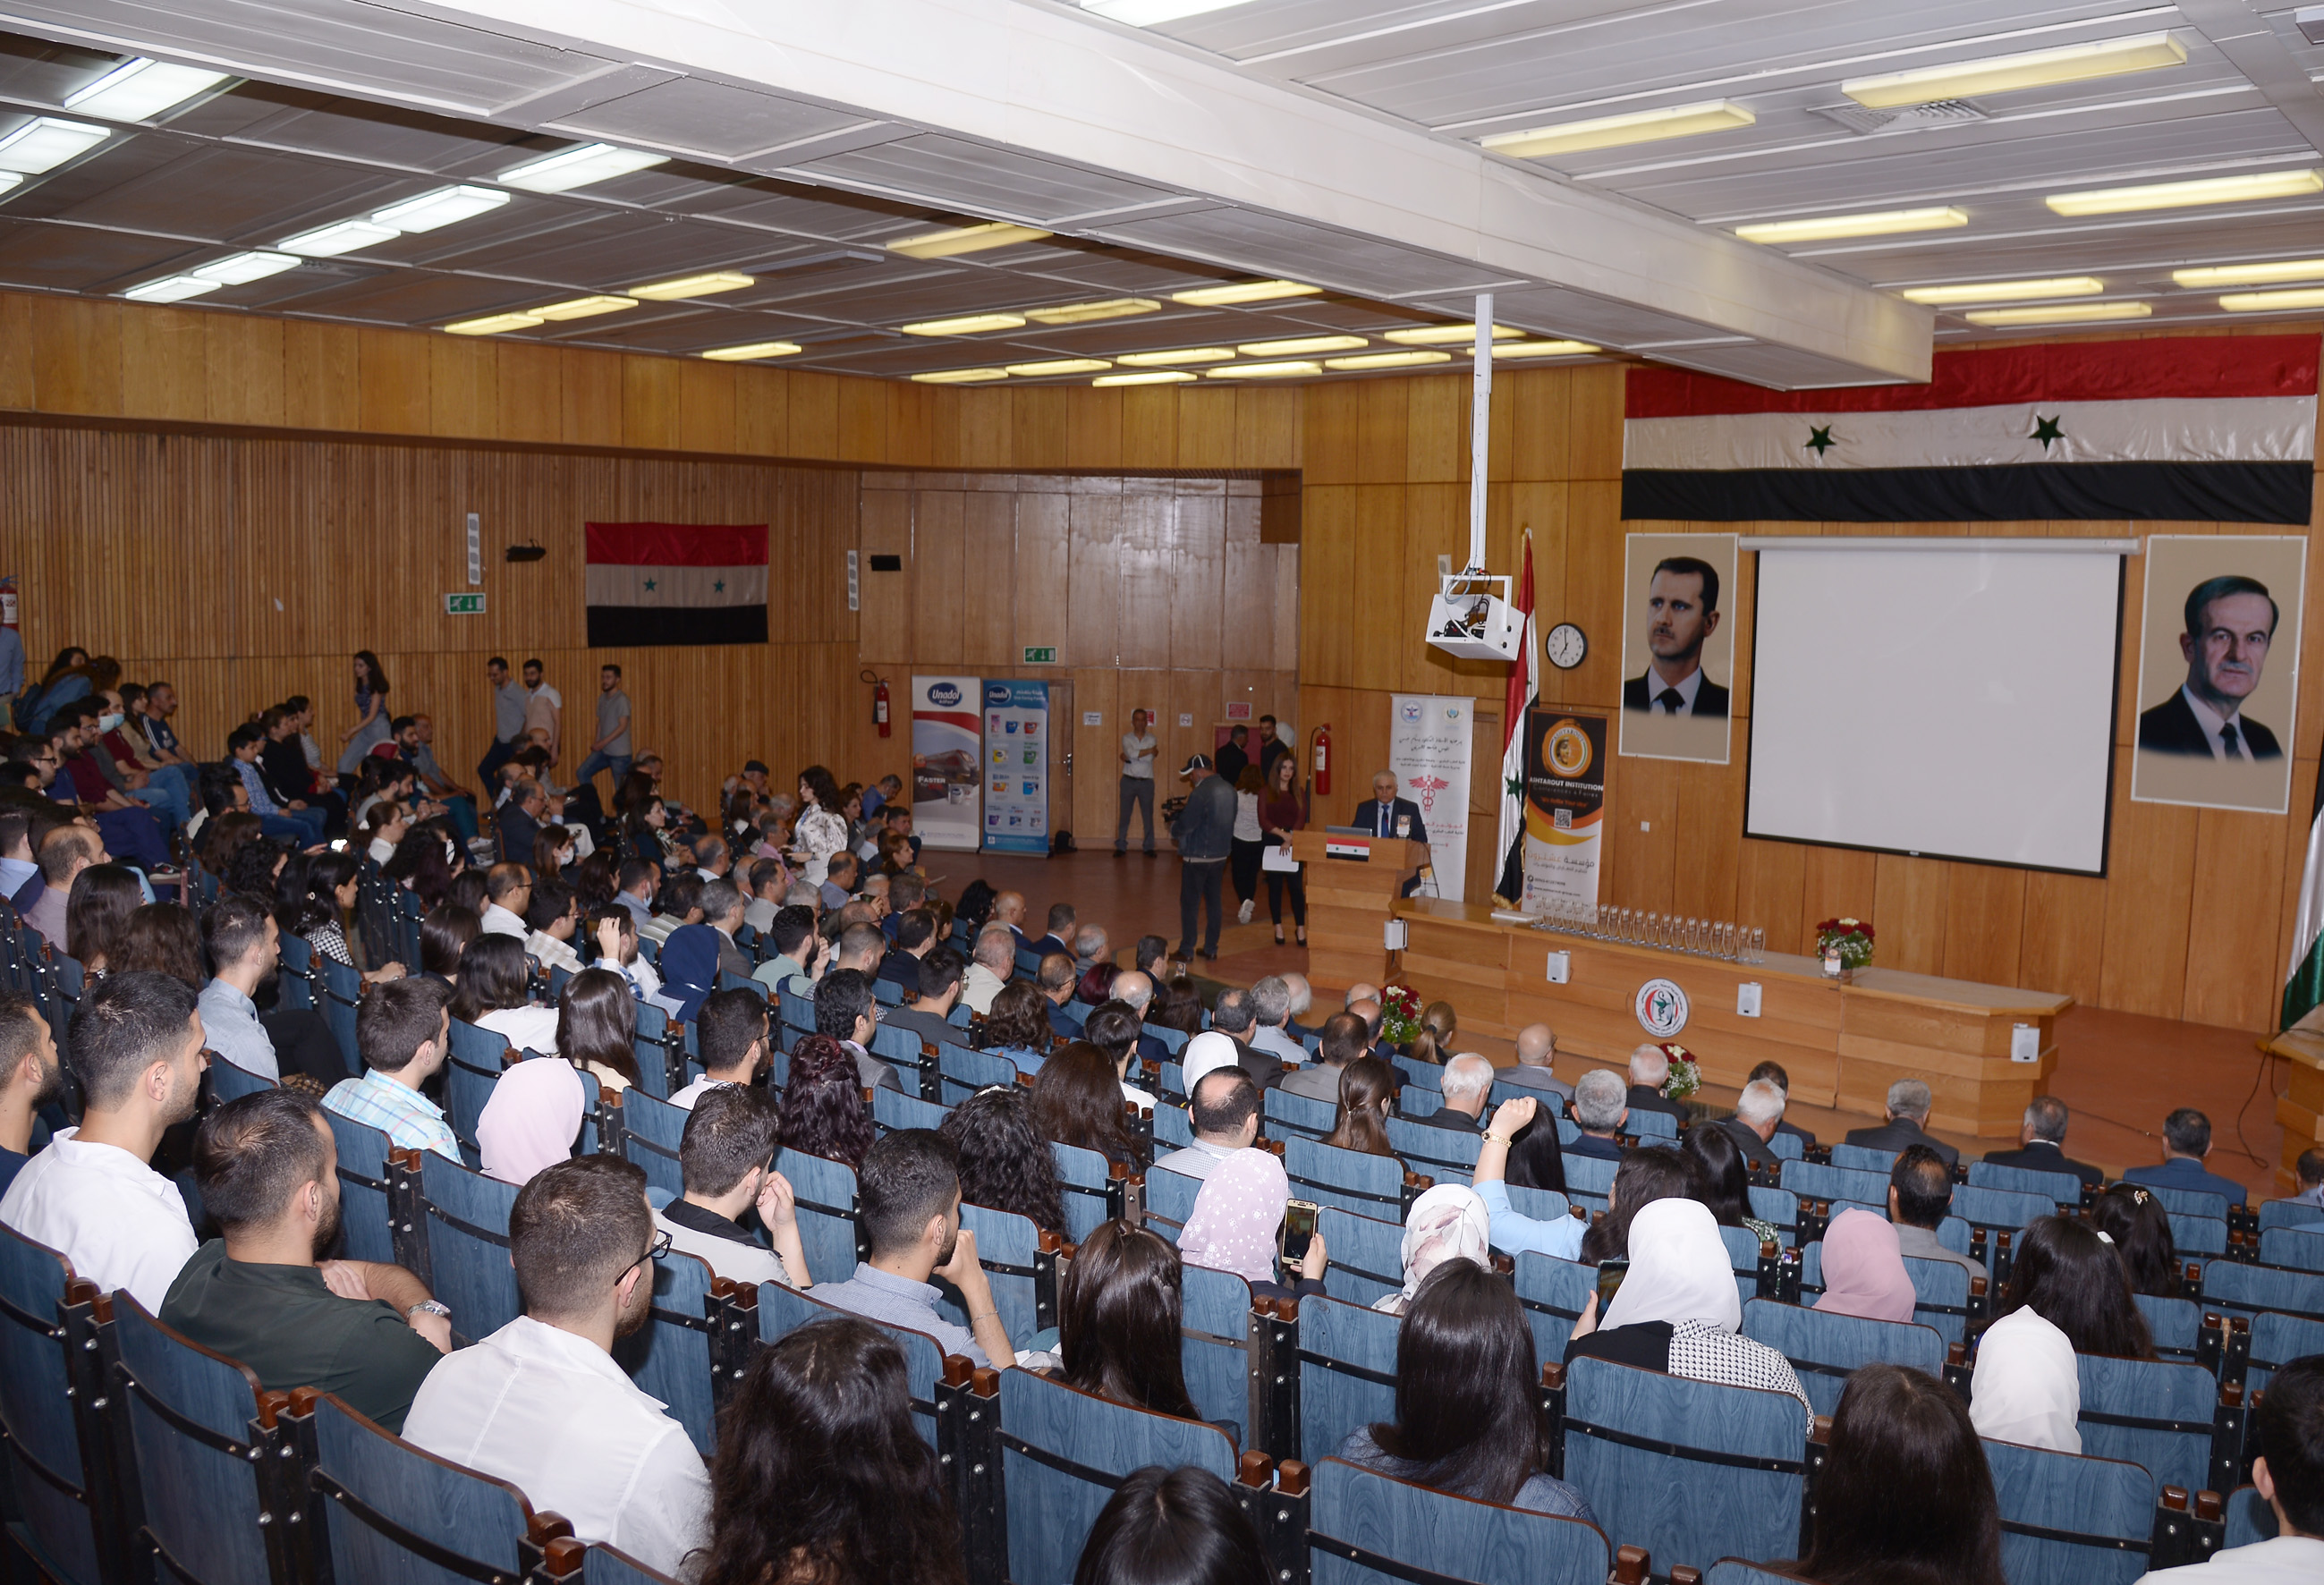 صور من أفتتاح مؤتمر كلية الطب البشري بجامعة تشرين